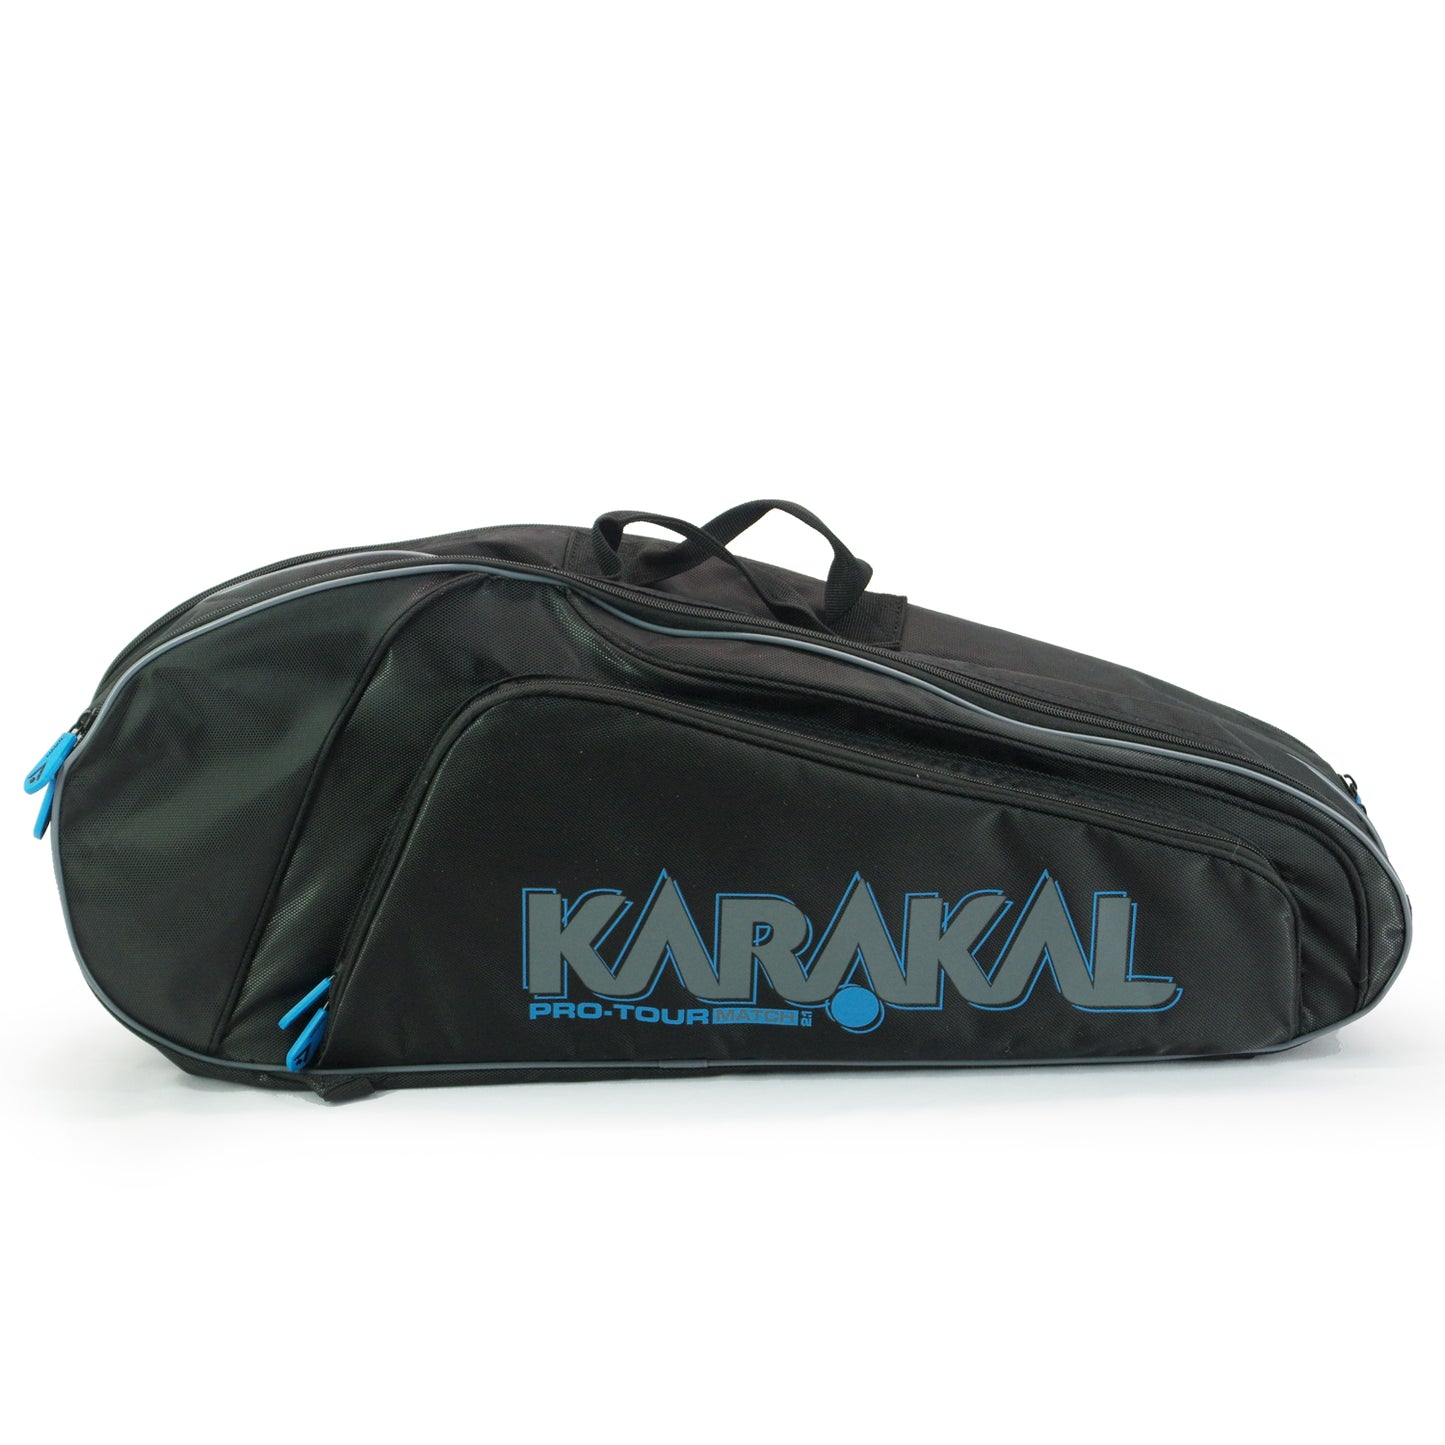 Karakal Pro Tour 2.1 Match, 4 Racket Bag with Blue Trim